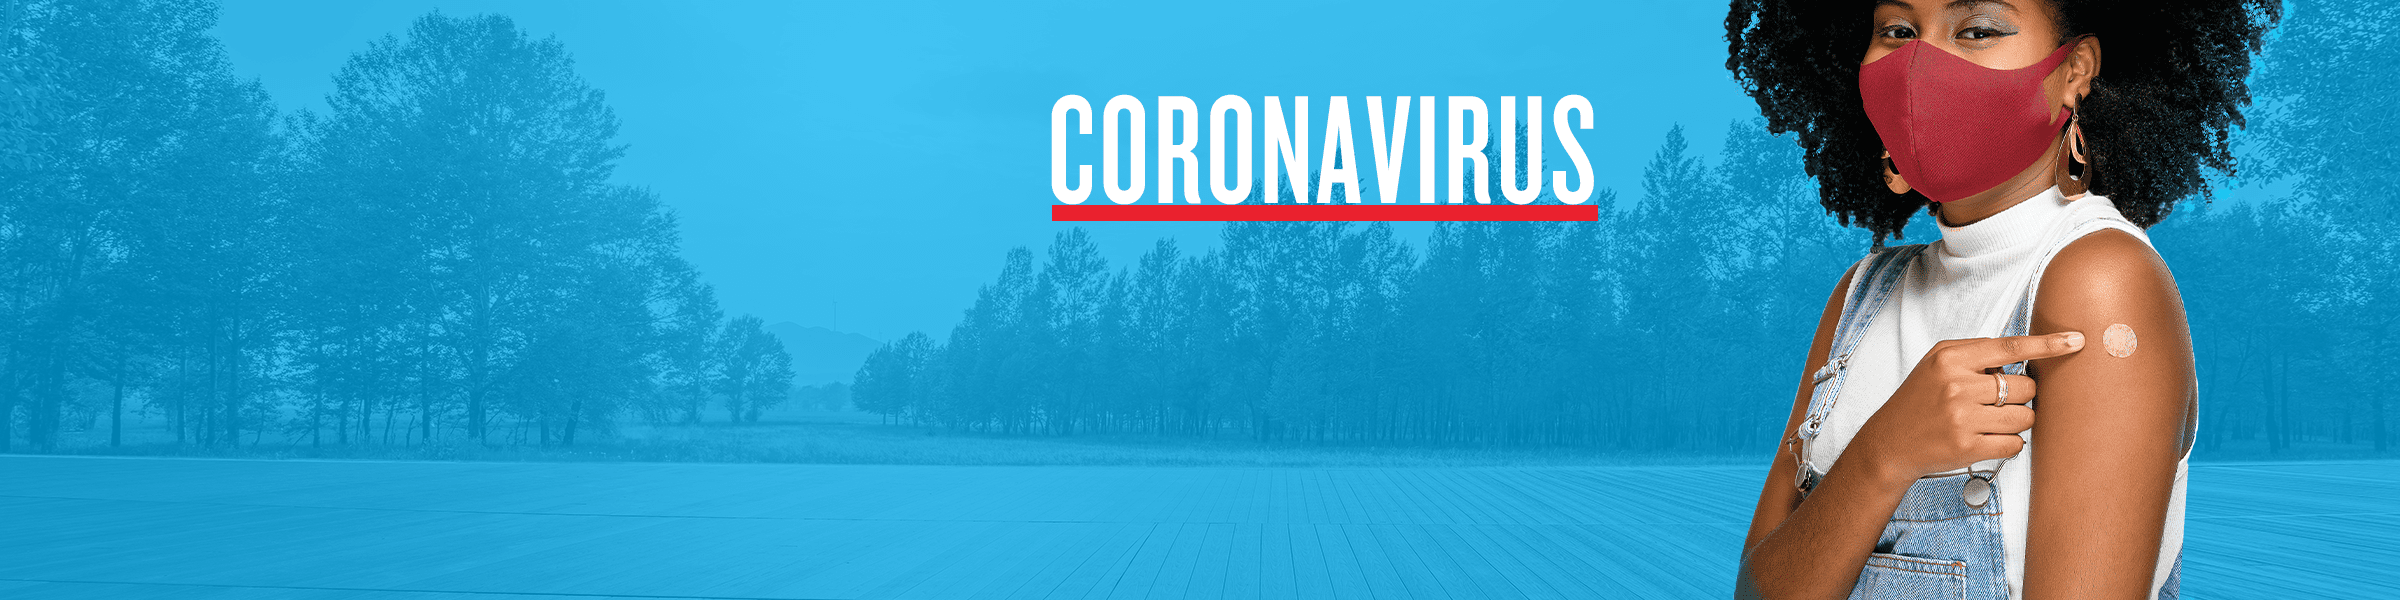 Coronavirus 2021 header image